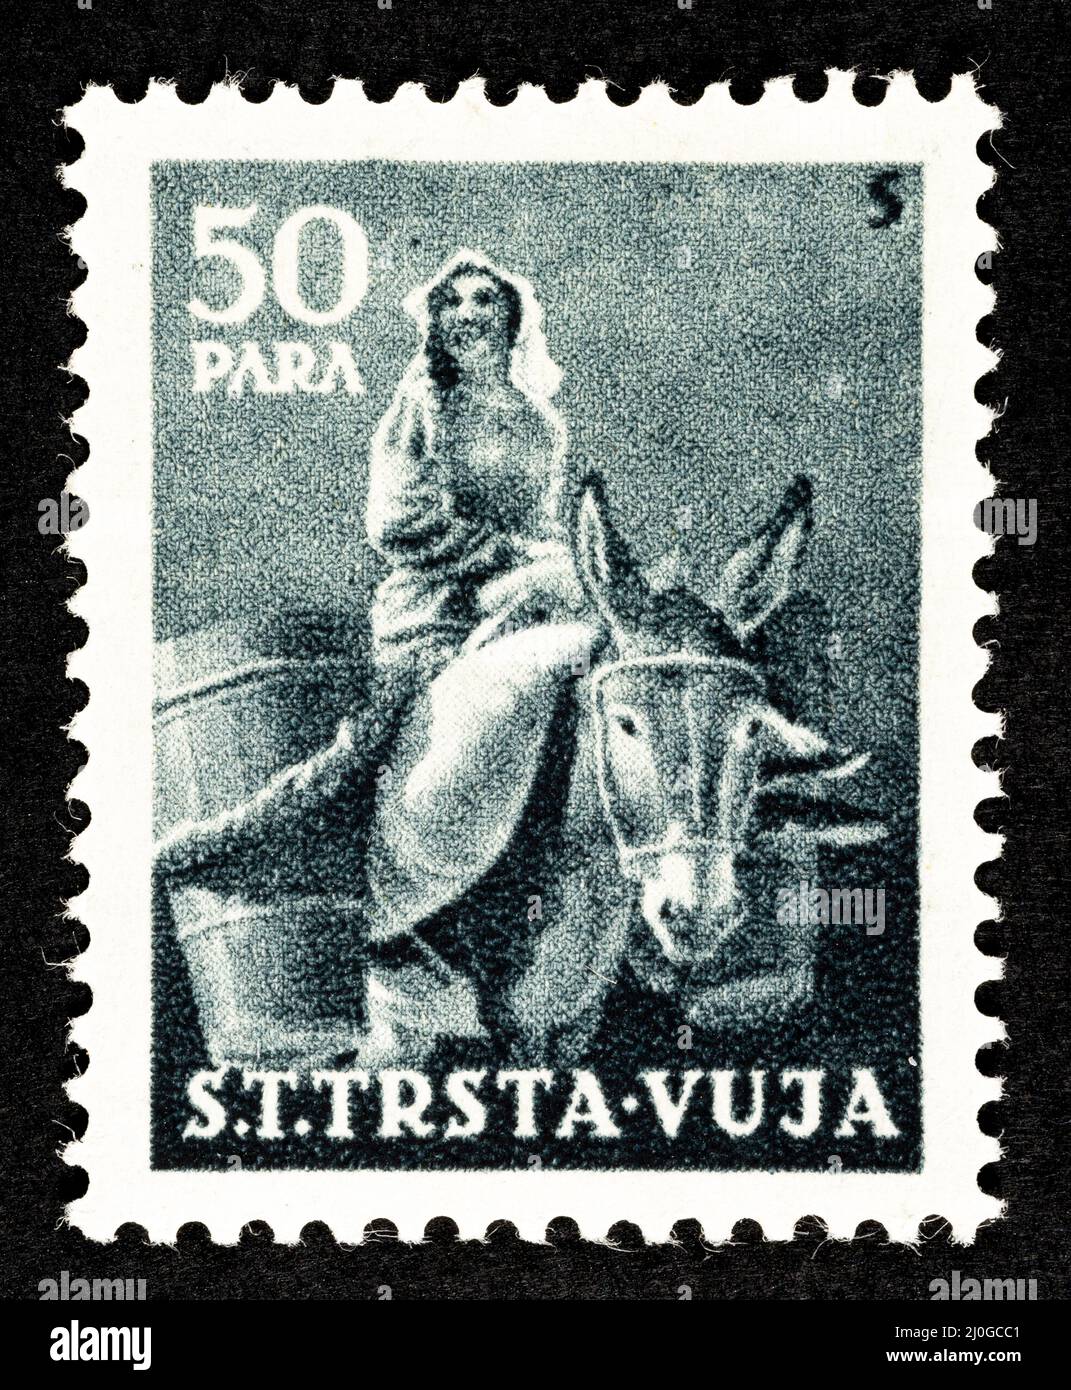 Timbre-poste commémoratif de l'ex-Yougoslavie, surimprimé STT VUJNA, avec illustration de l'âne du territoire libre de Trieste, zone Banque D'Images